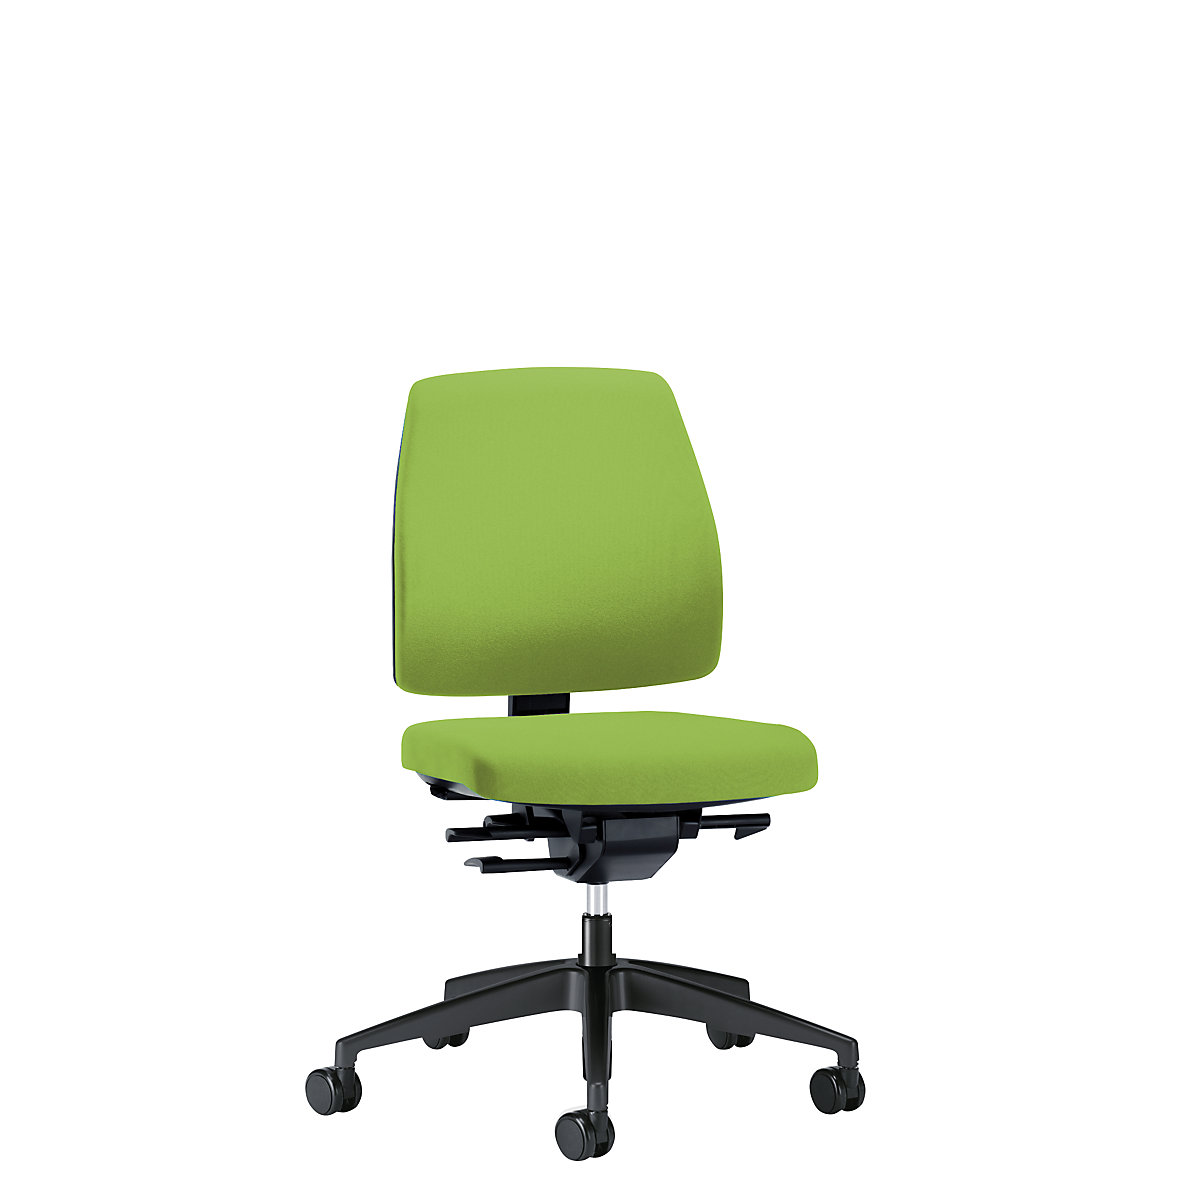 Bürodrehstuhl GOAL, Rückenlehnenhöhe 430 mm interstuhl, Gestell schwarz, mit harten Rollen, gelbgrün, Sitztiefe 410 mm